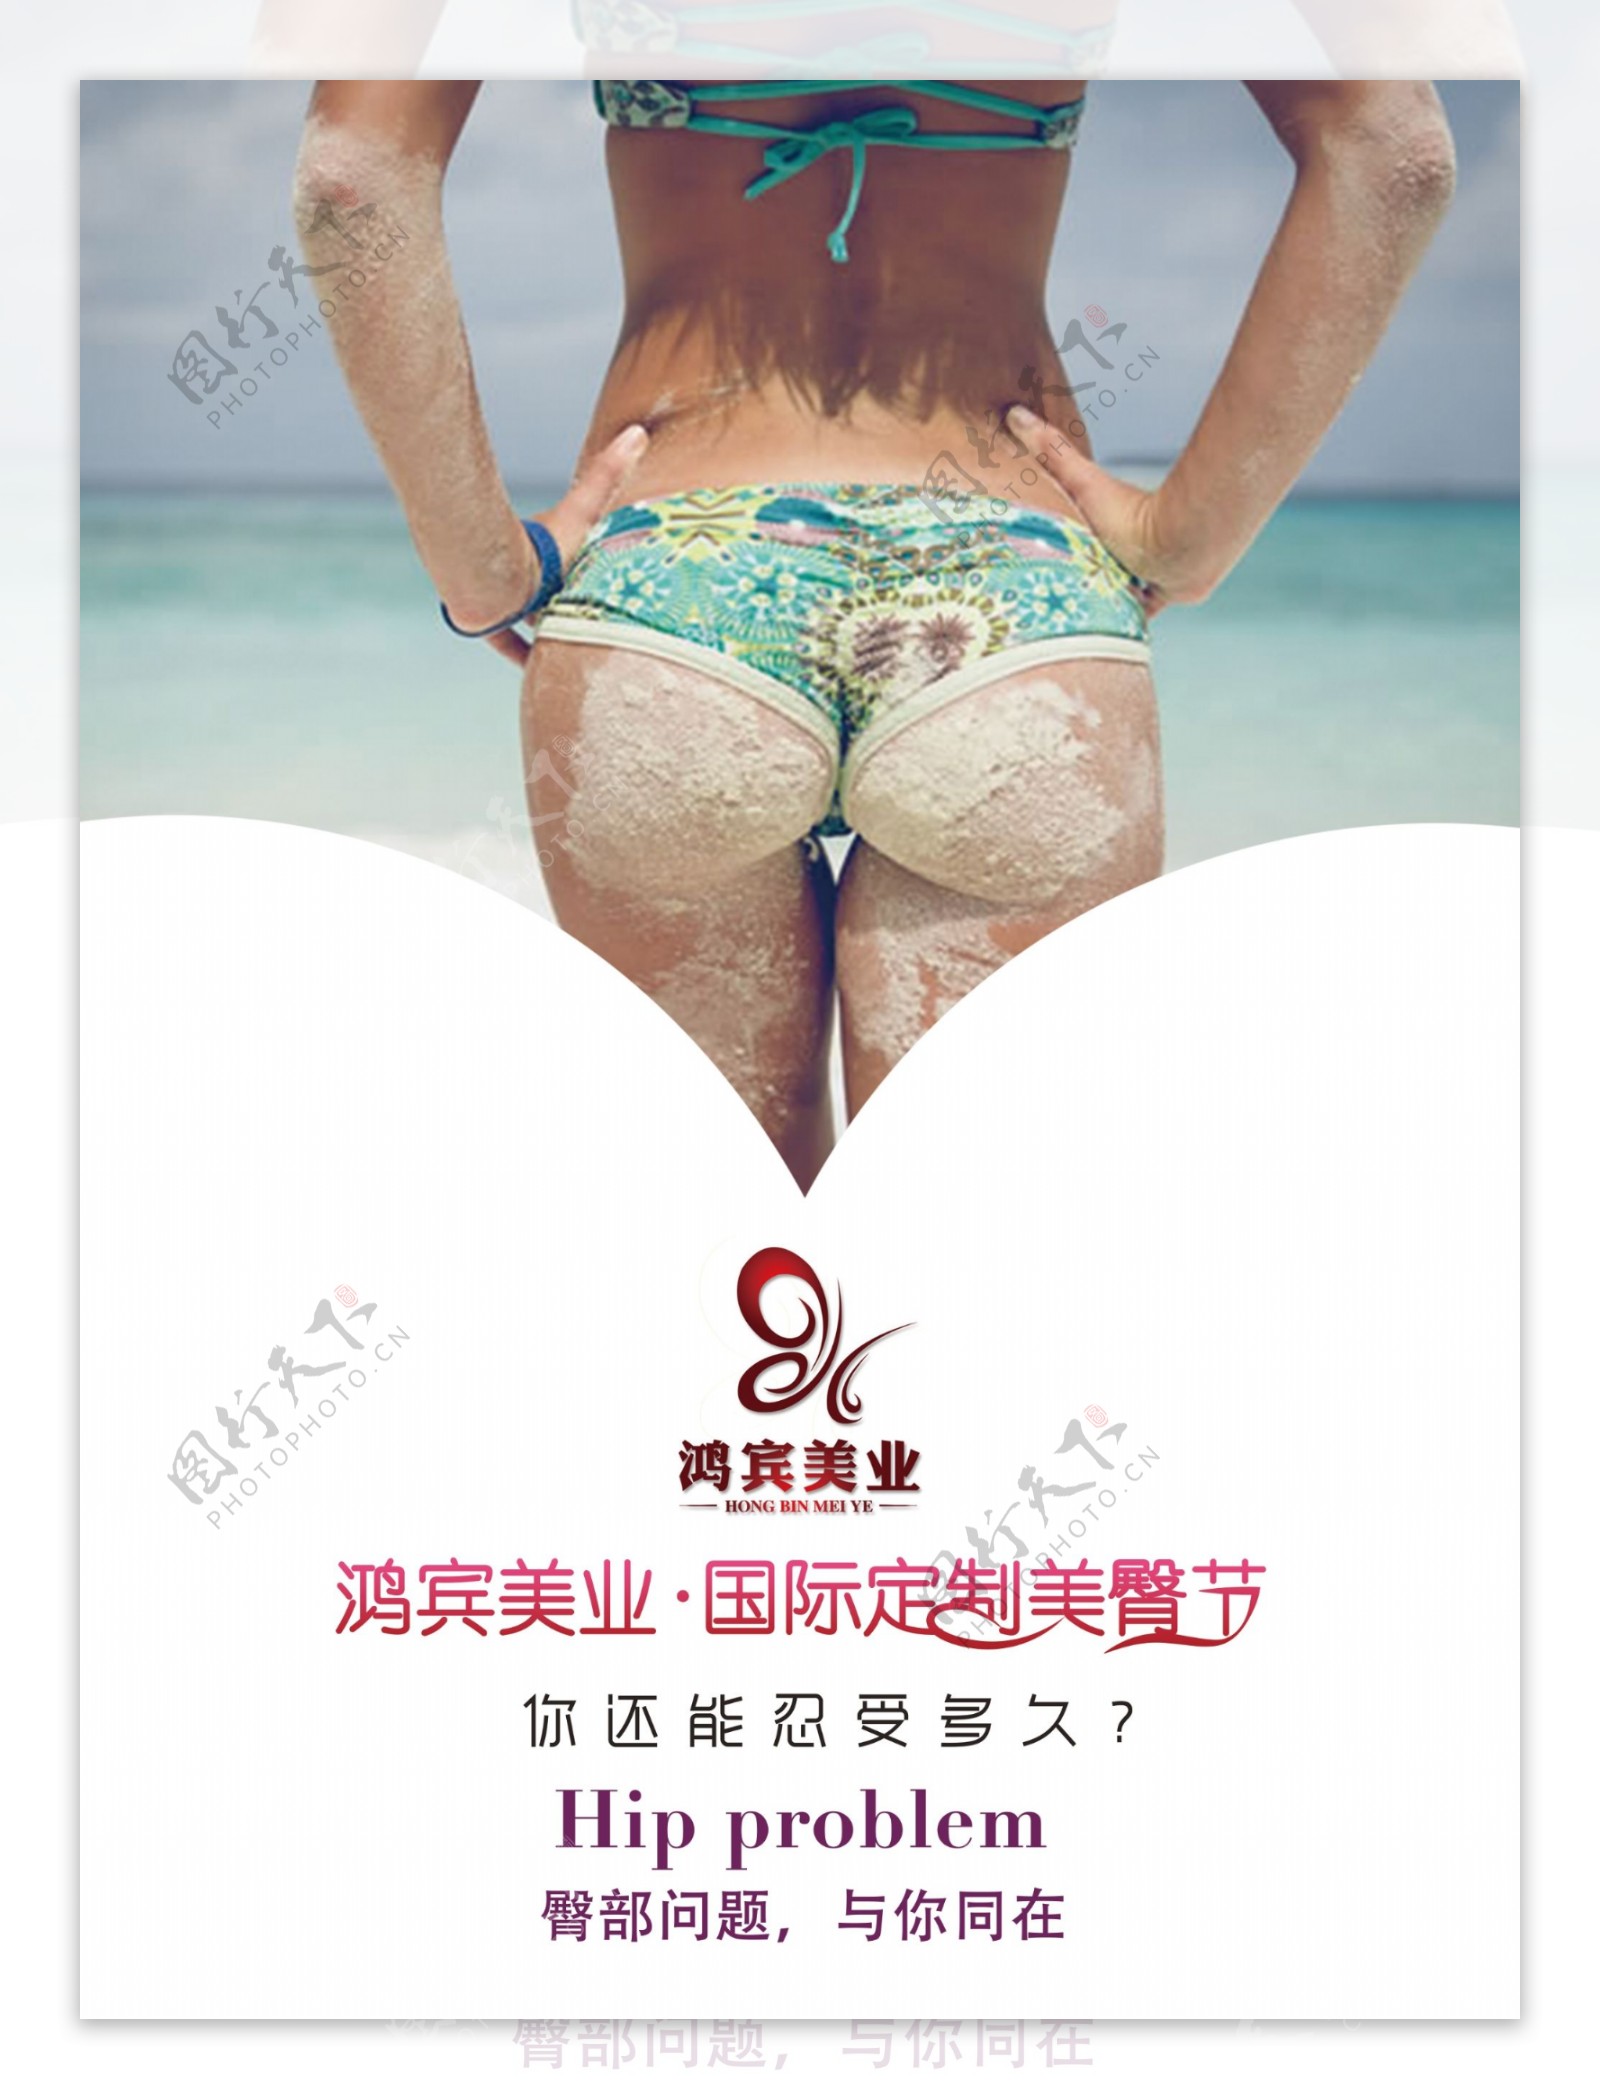 沙滩美臀海报设计